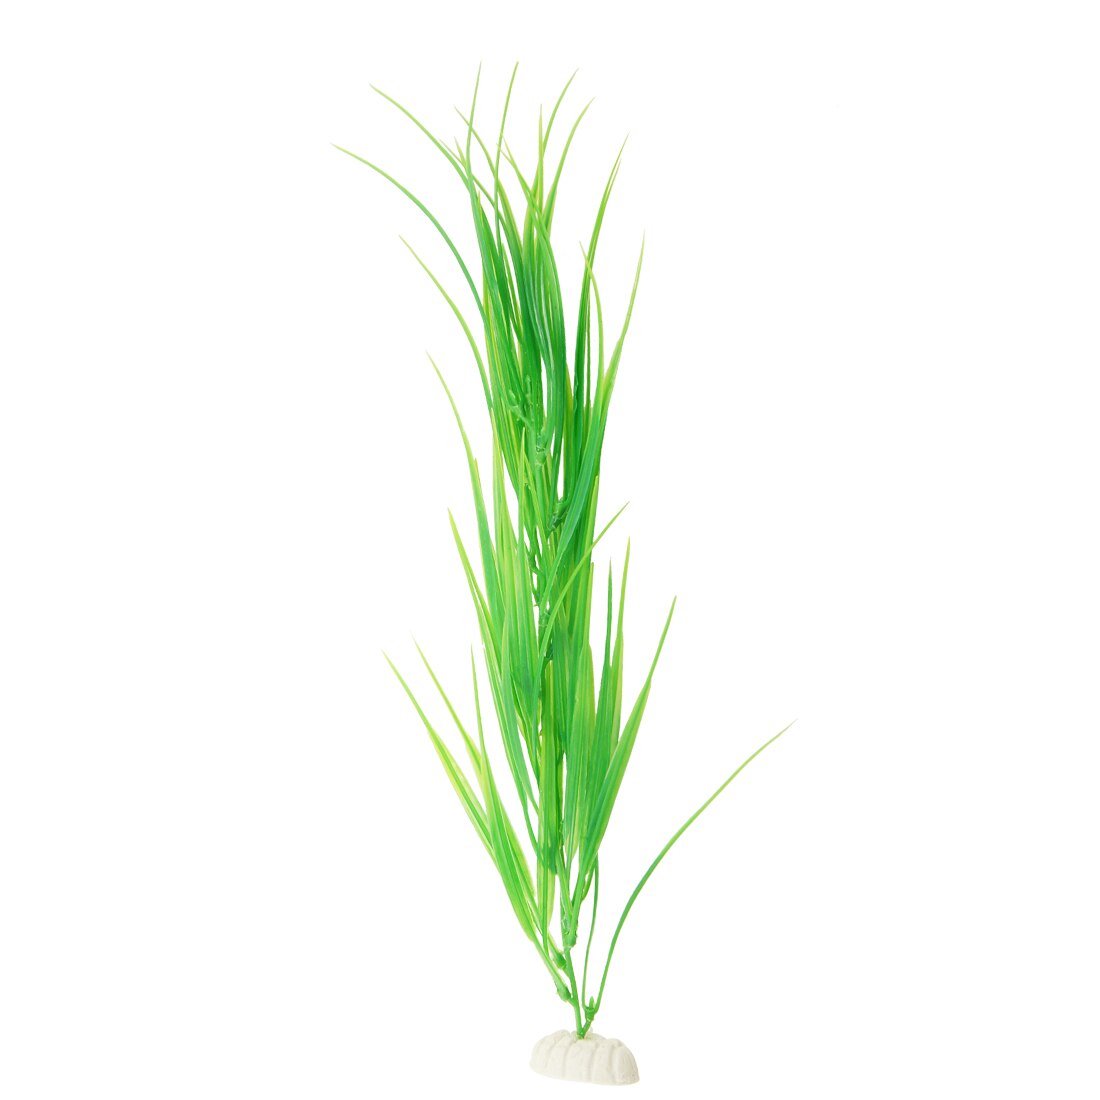 Uxcell Artificial Plants Grass